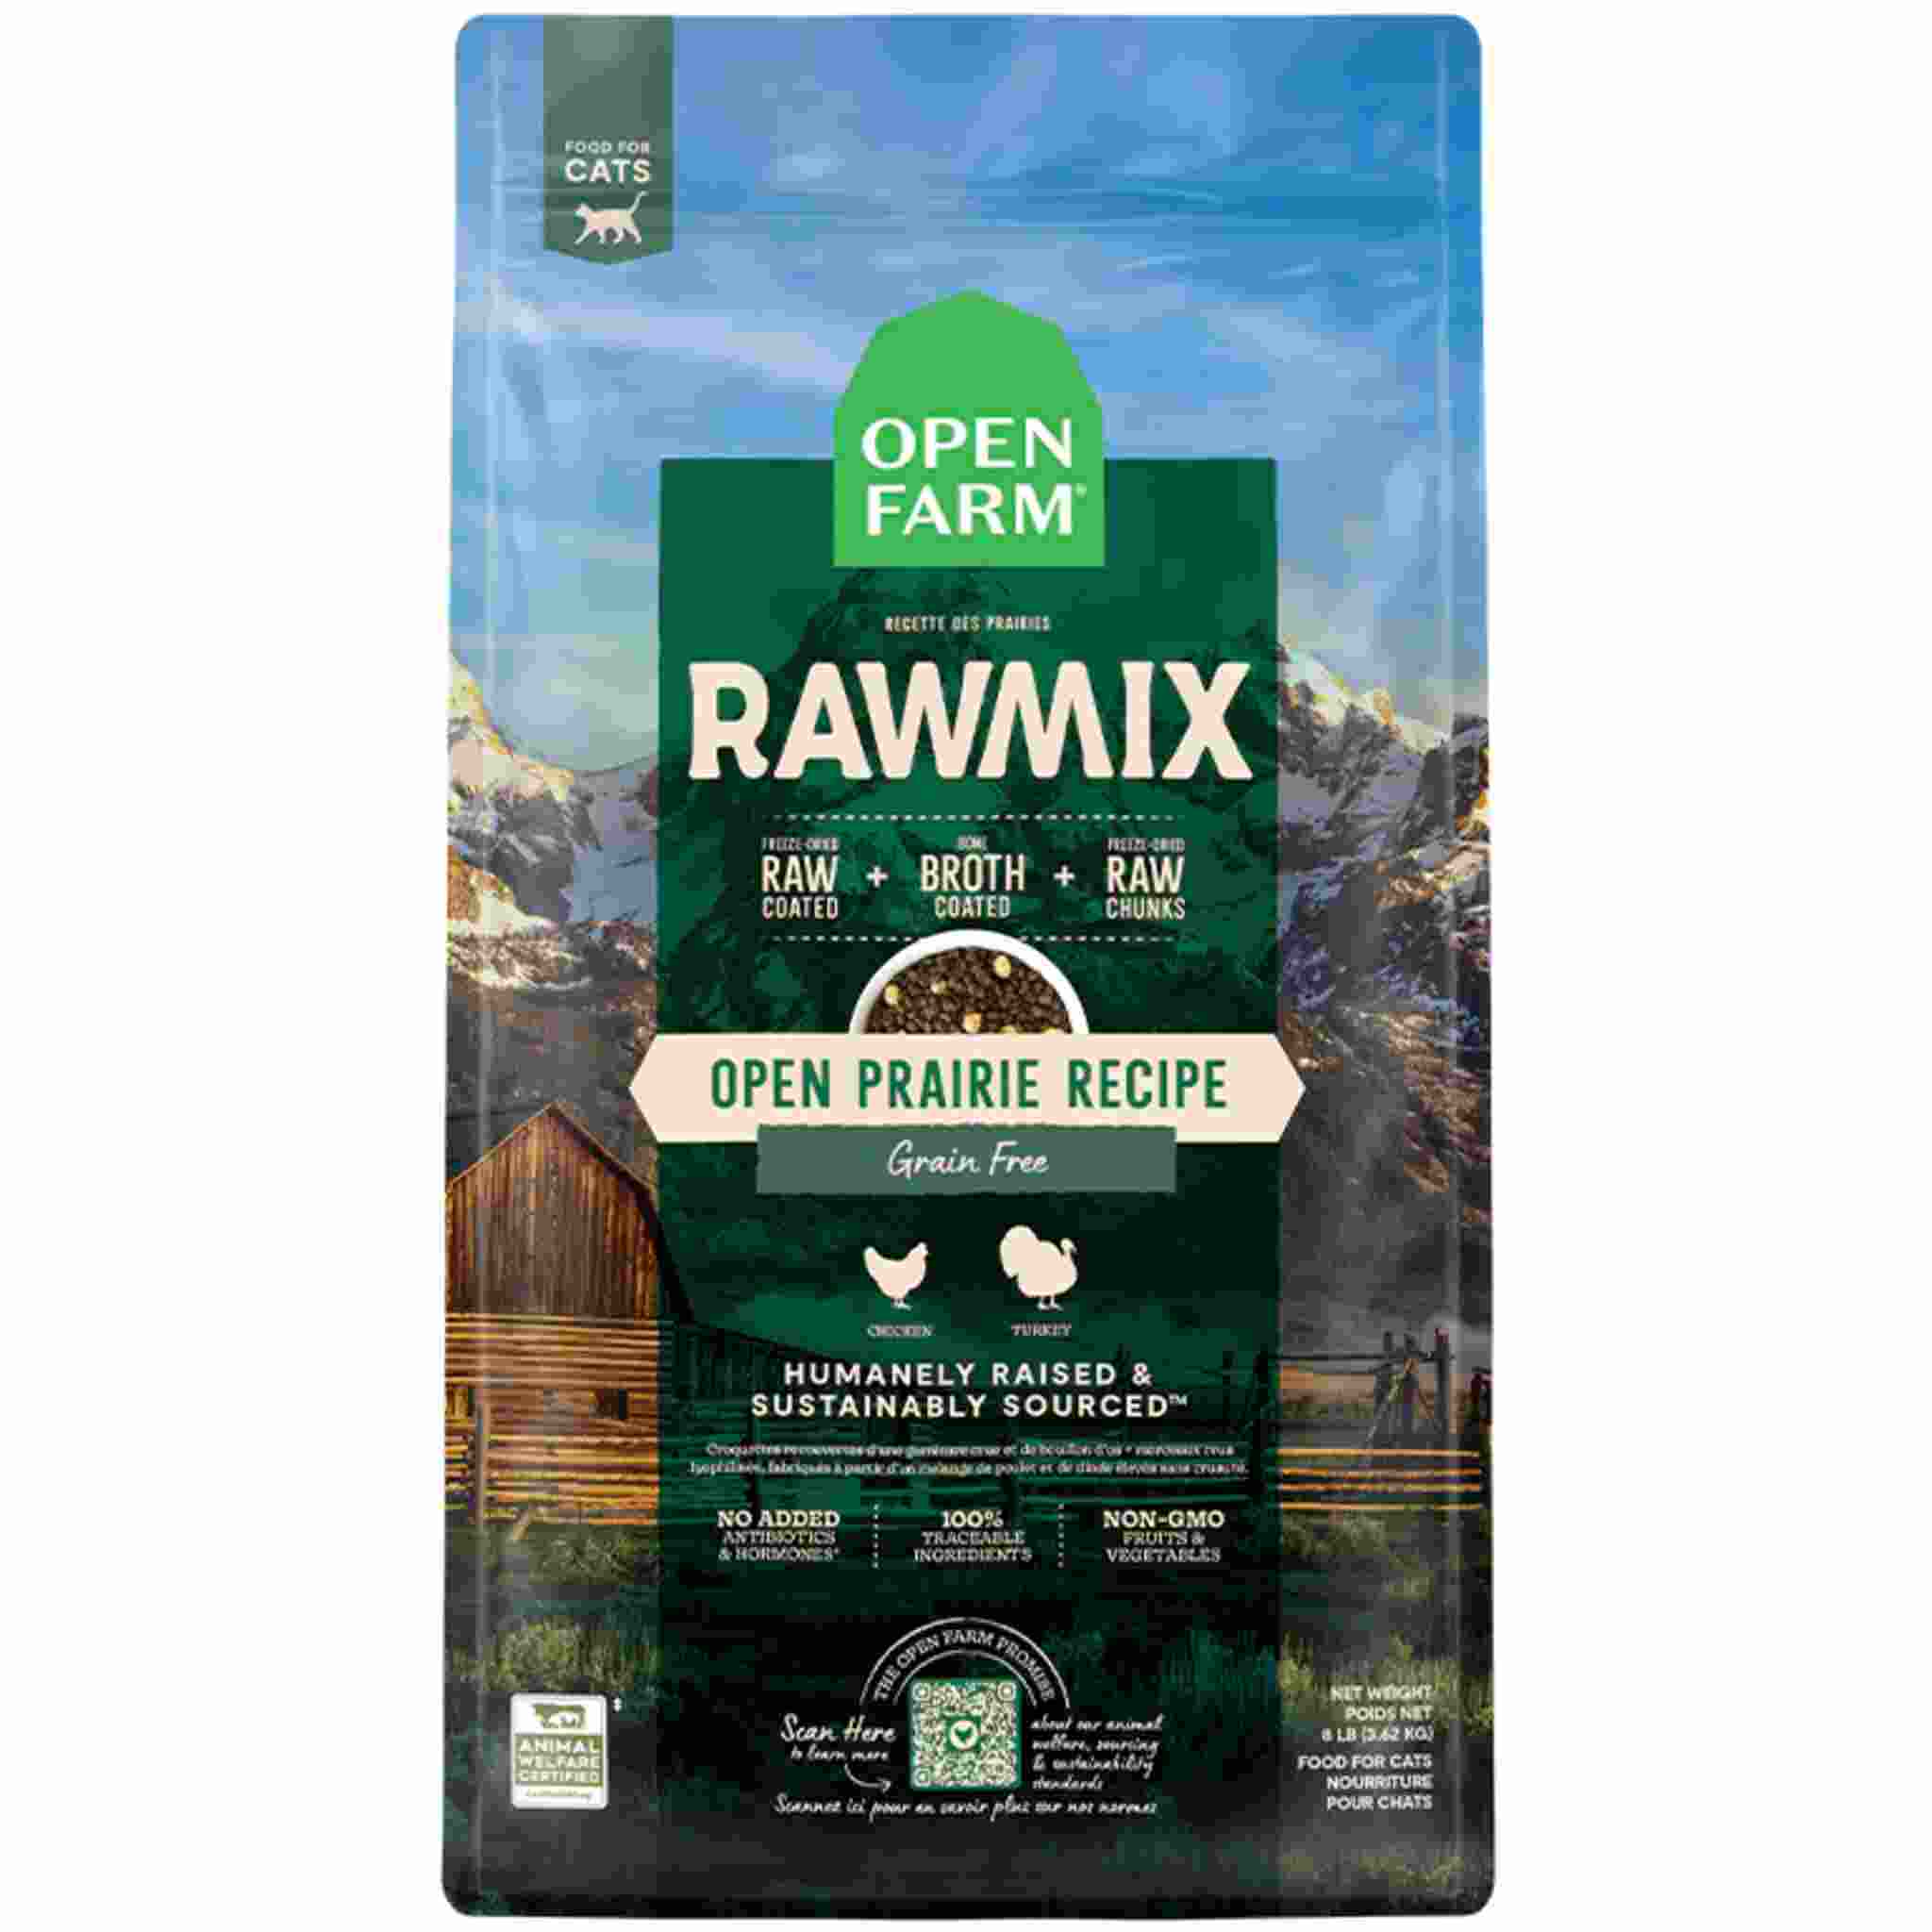 Open Farm RawMix Open Prairie Grain & Legume Free Cat Food